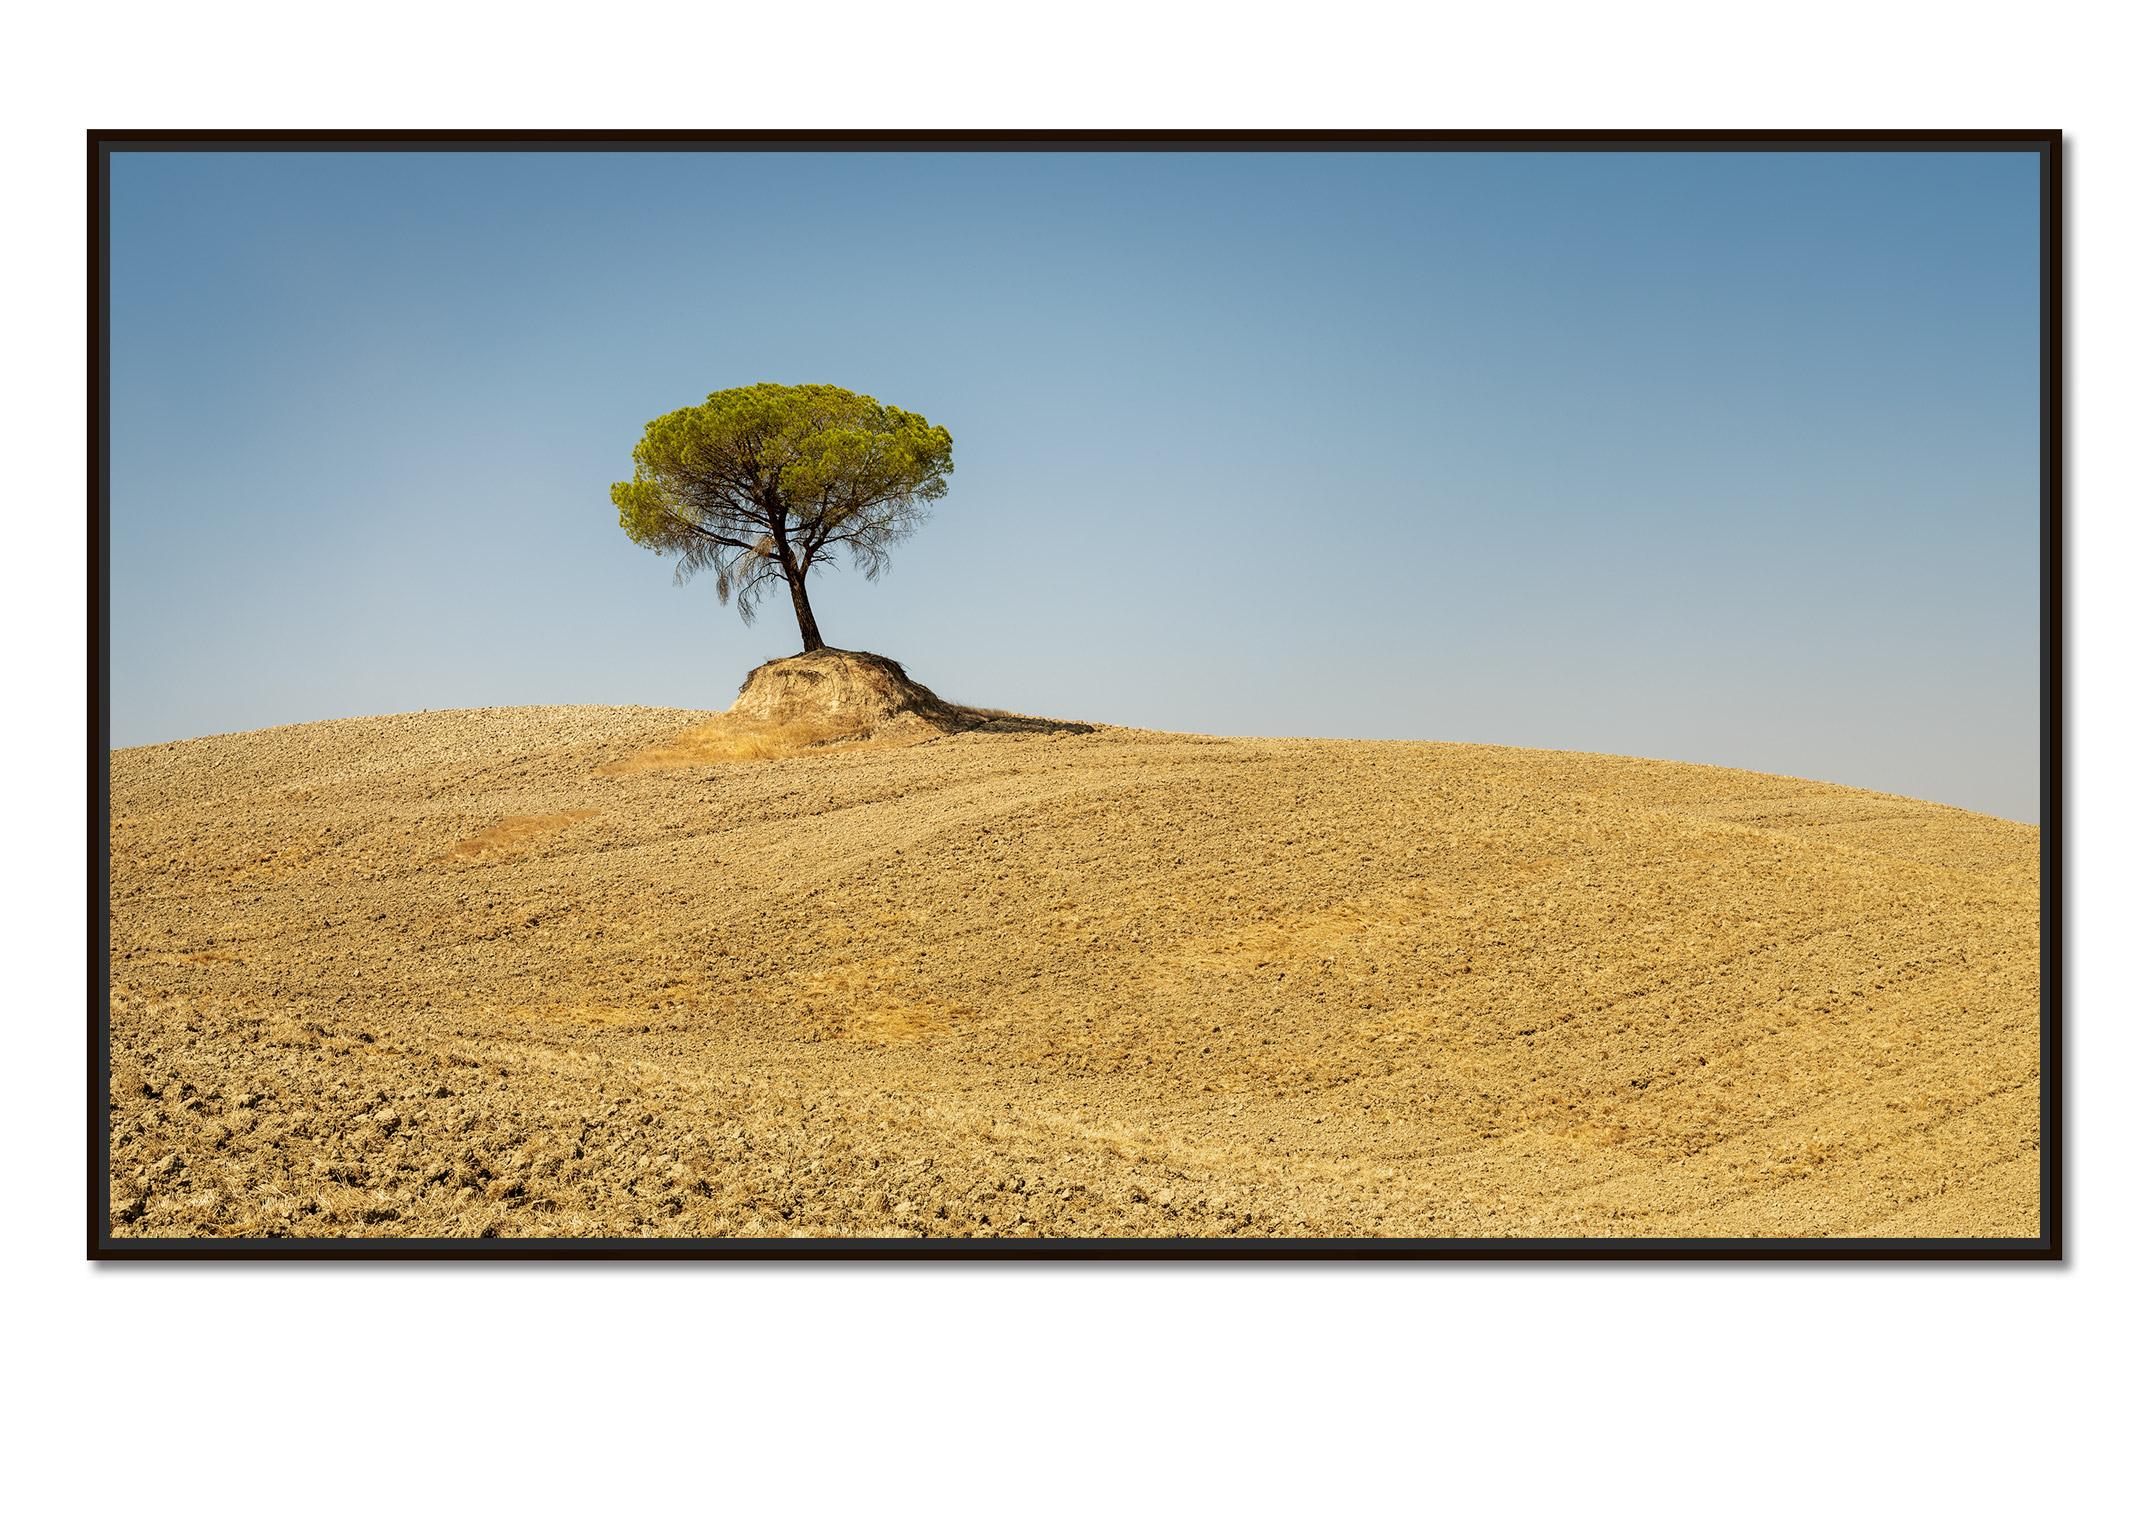 Pines de pierre italiens, arbre, Toscane, Italie, photographie d'art en couleur, paysage - Photograph de Gerald Berghammer